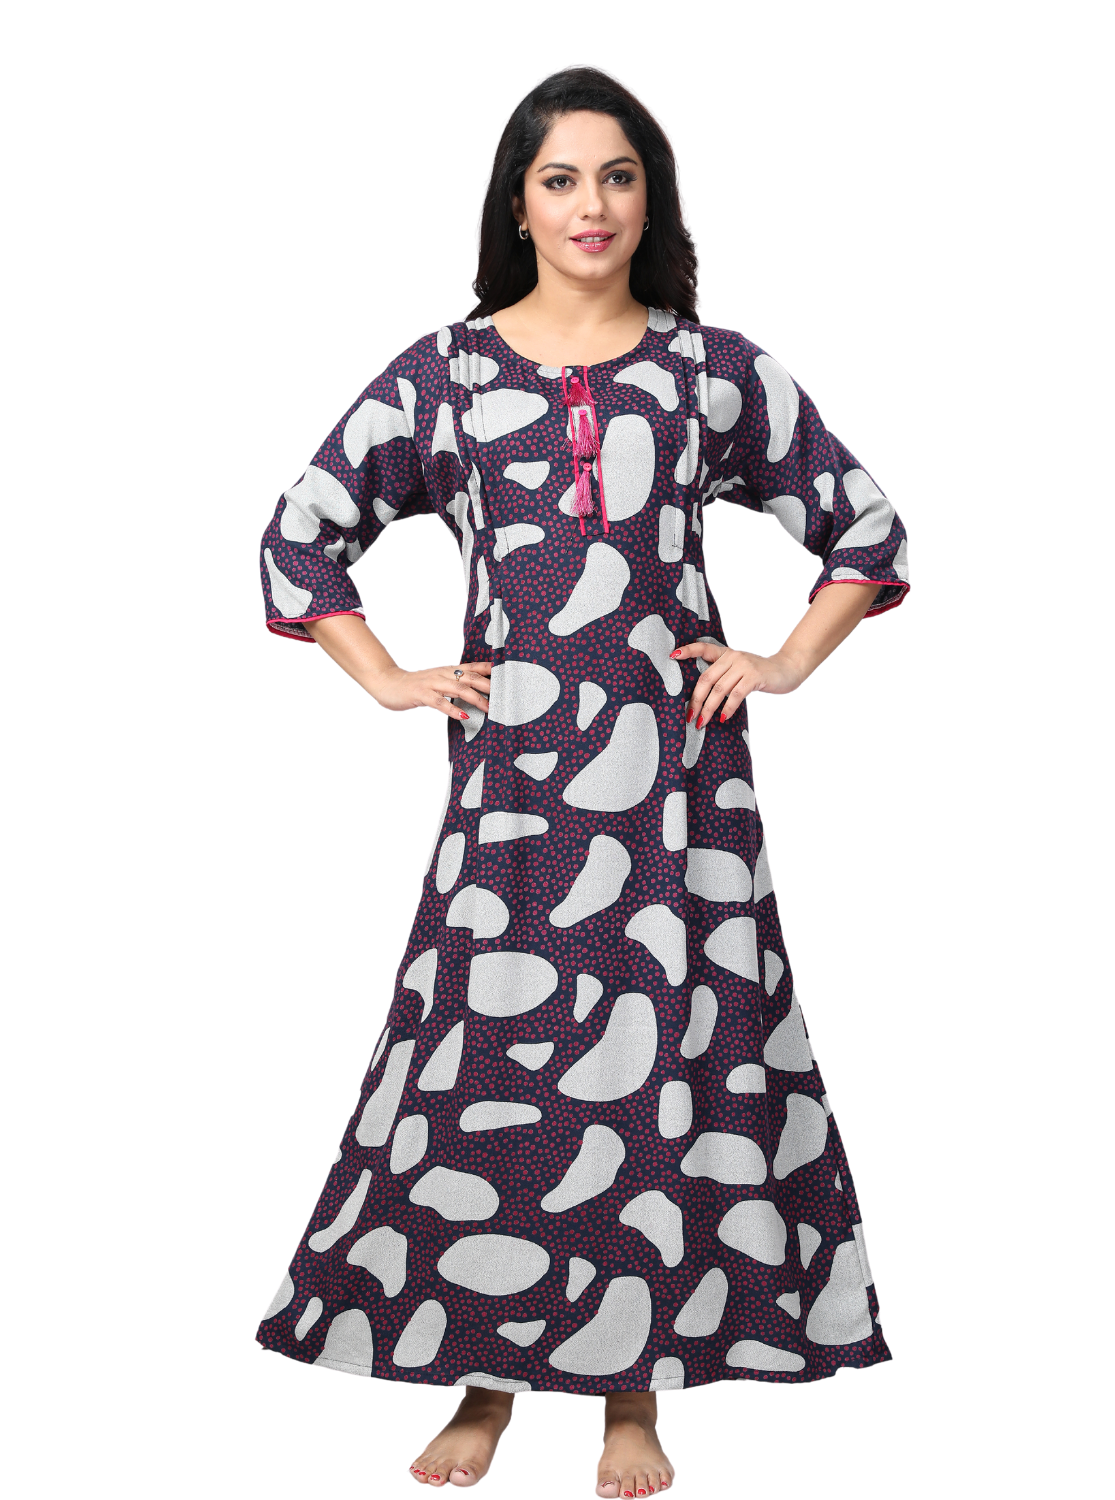 StylishMANGAI Alpine KURTI Style | Beautiful Stylish KURTI Model | Side Pocket | 3/4 Sleeve | Perfect Nightwear Collection's for Trendy Women's